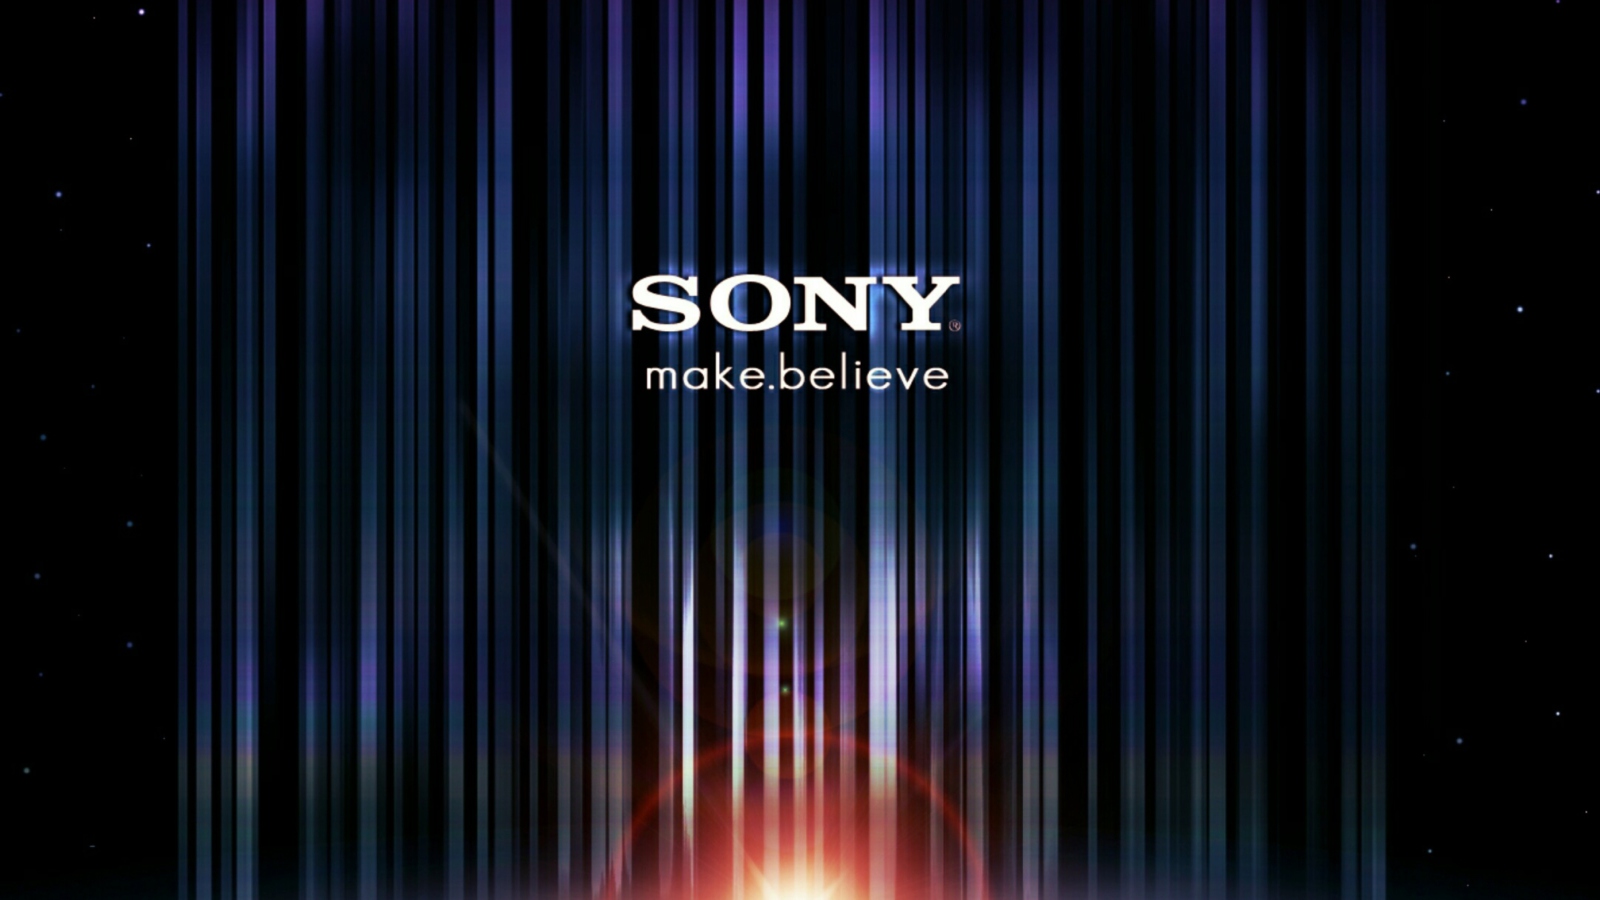 Sony Make Believe wallpaper 1600x900